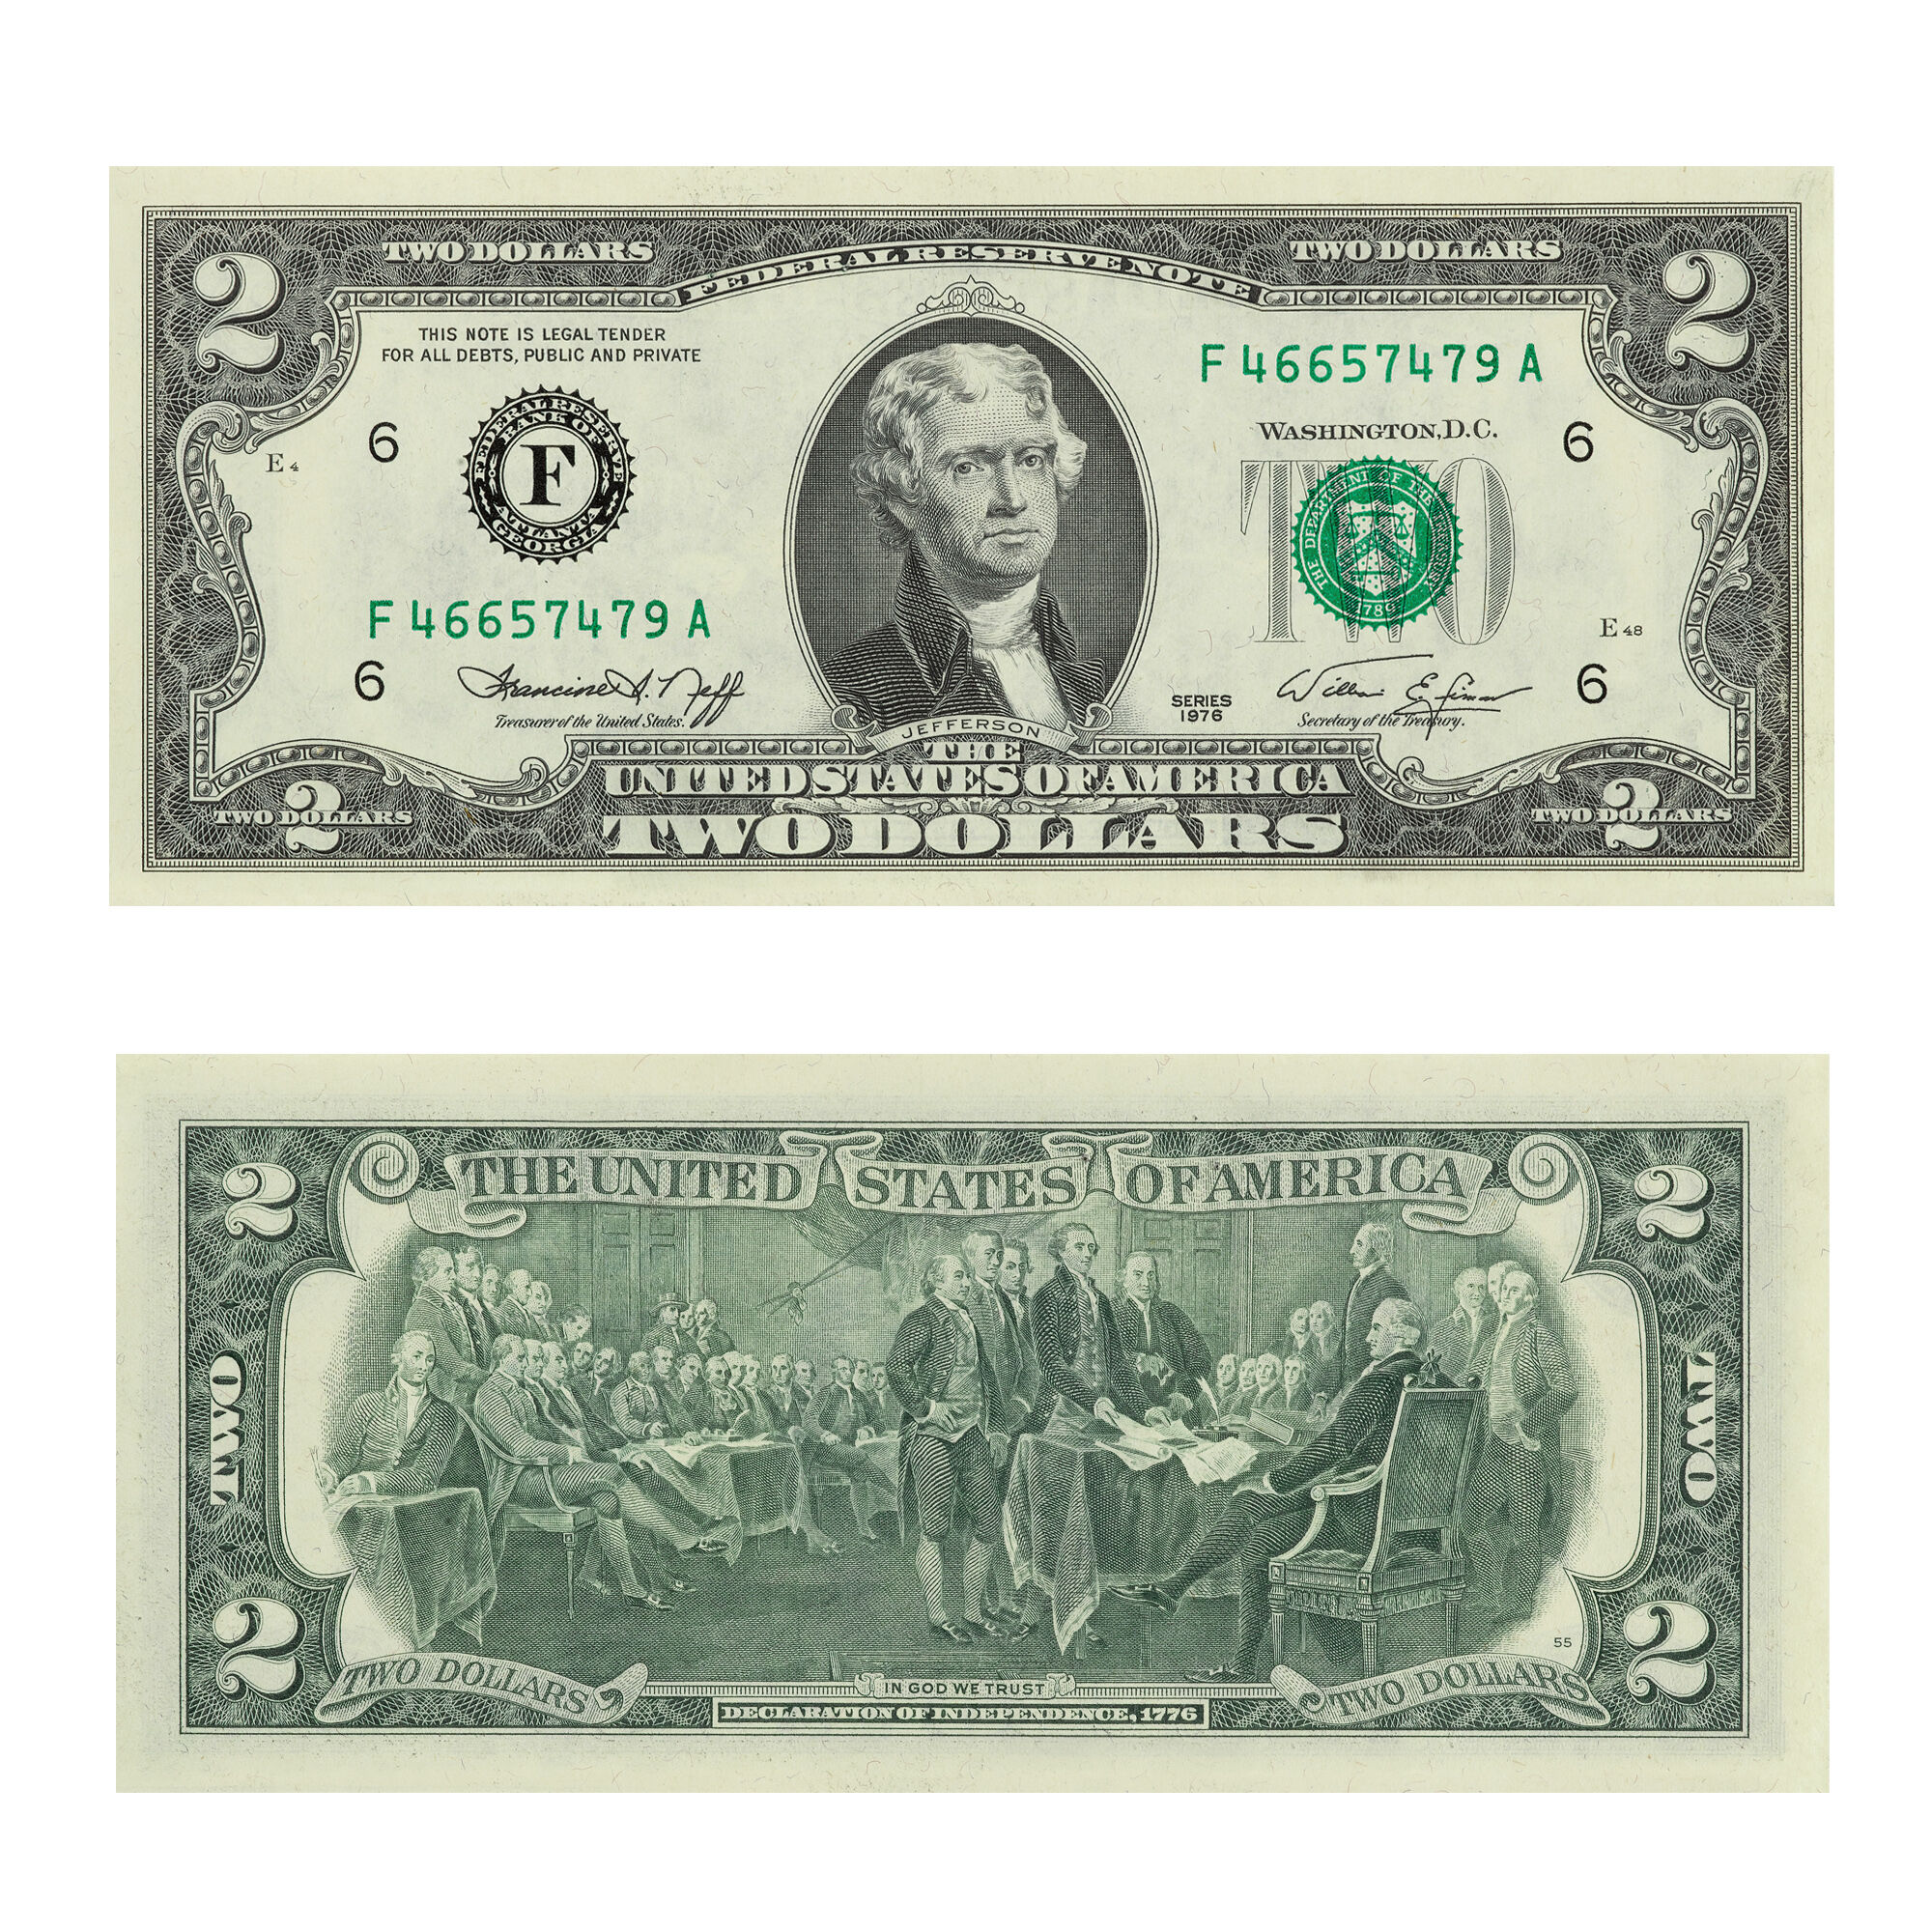 Modern $2 Bill Collector Set 6829 0014 d 1976 bill